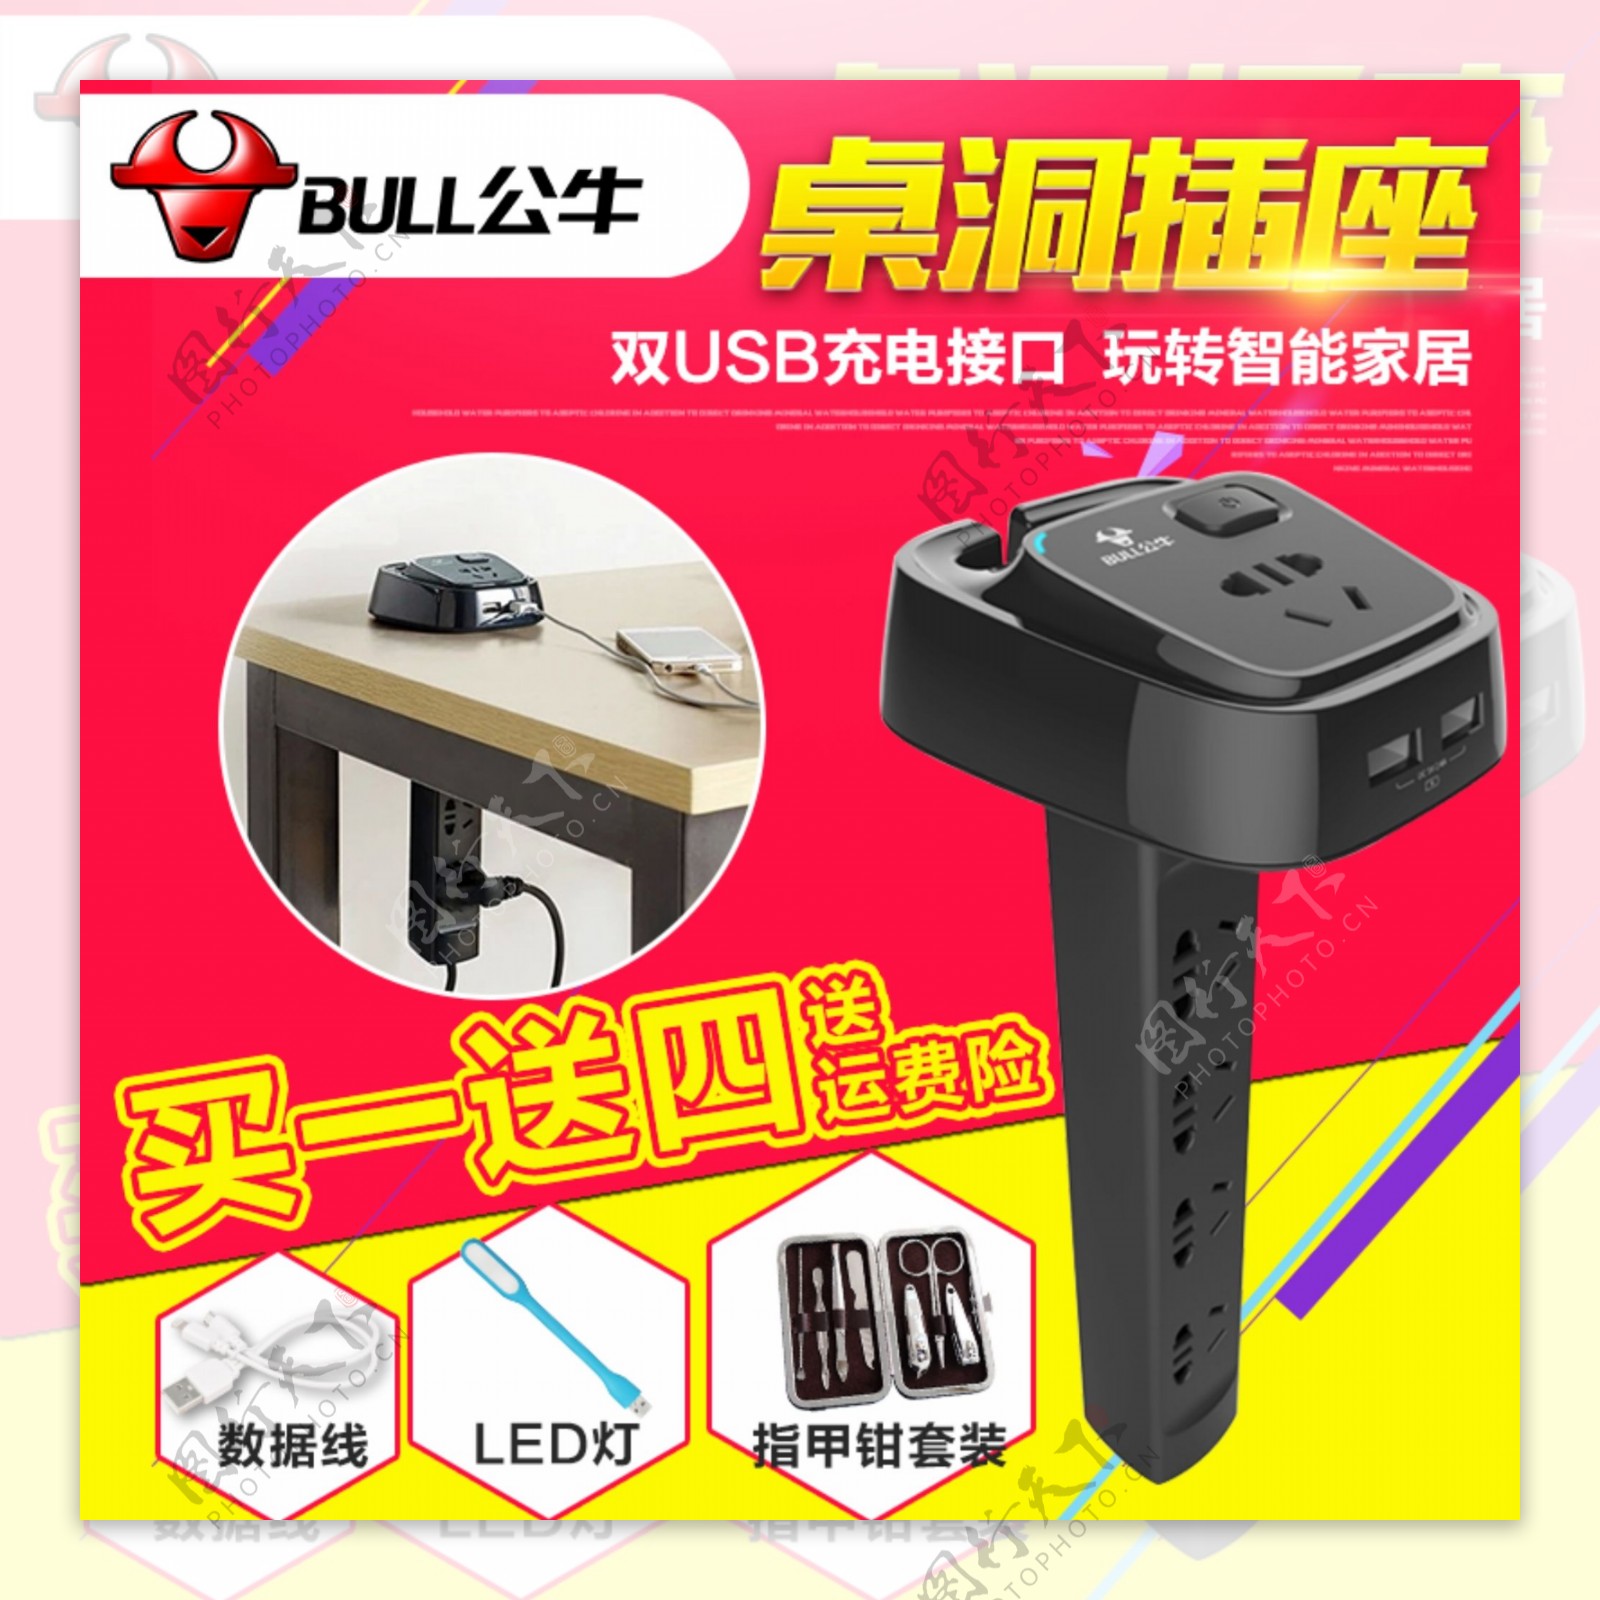 USB充电插座